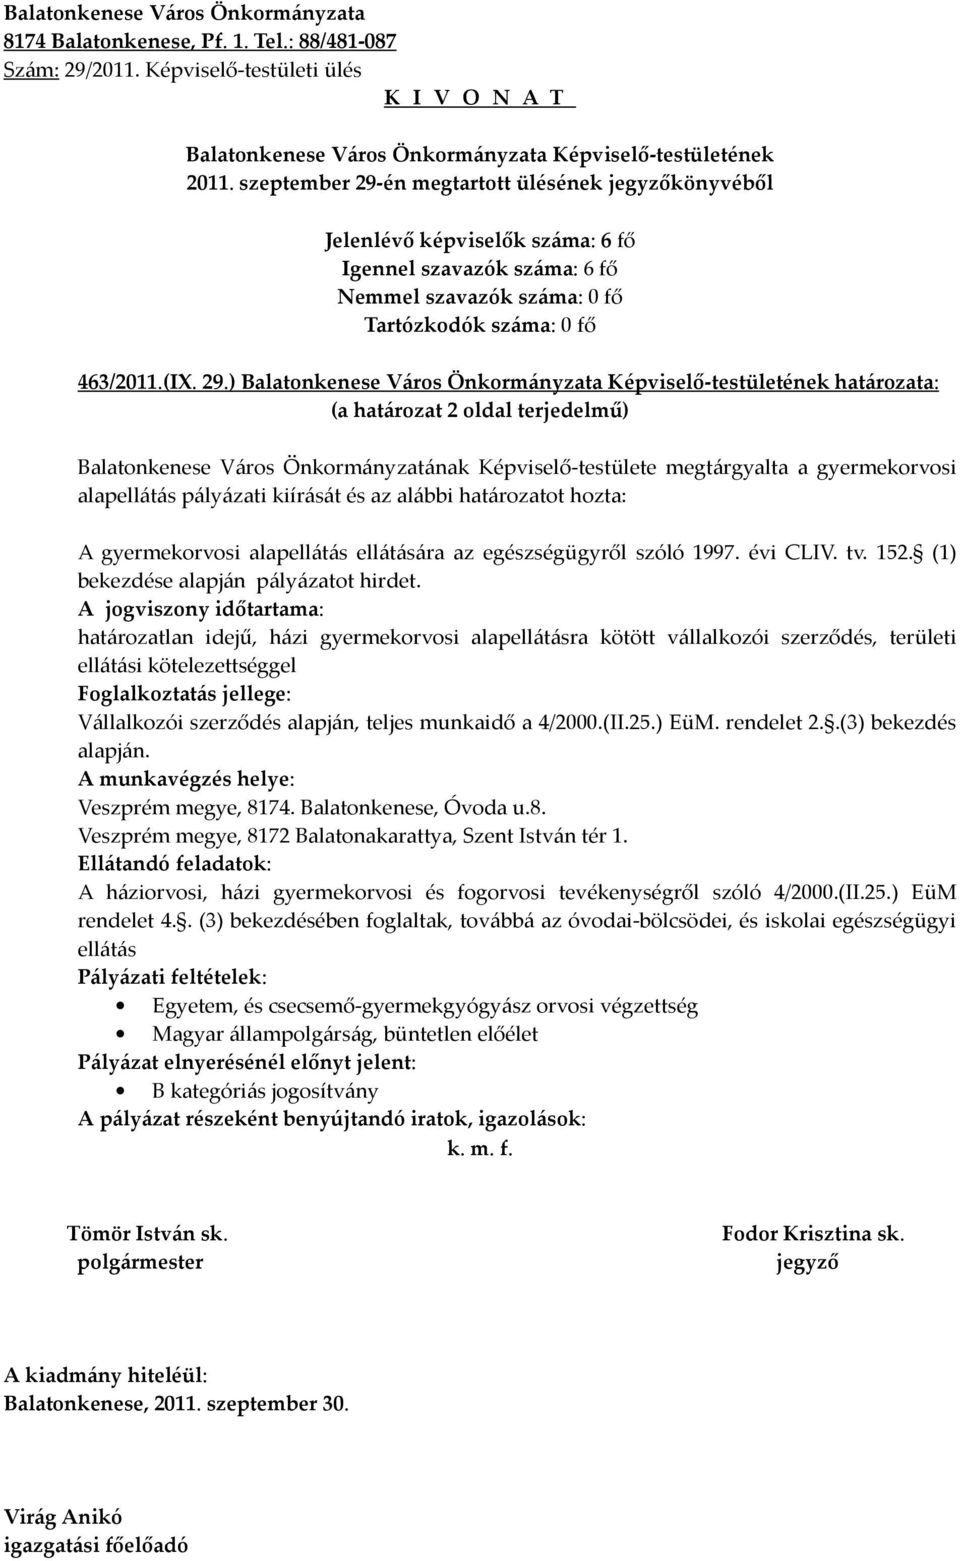 ) határozata: (a határozat 2 oldal terjedelmű) Balatonkenese Város Önkormányzatának Képviselő-testülete megtárgyalta a gyermekorvosi alapellátás pályázati kiírását és az alábbi határozatot hozta: A